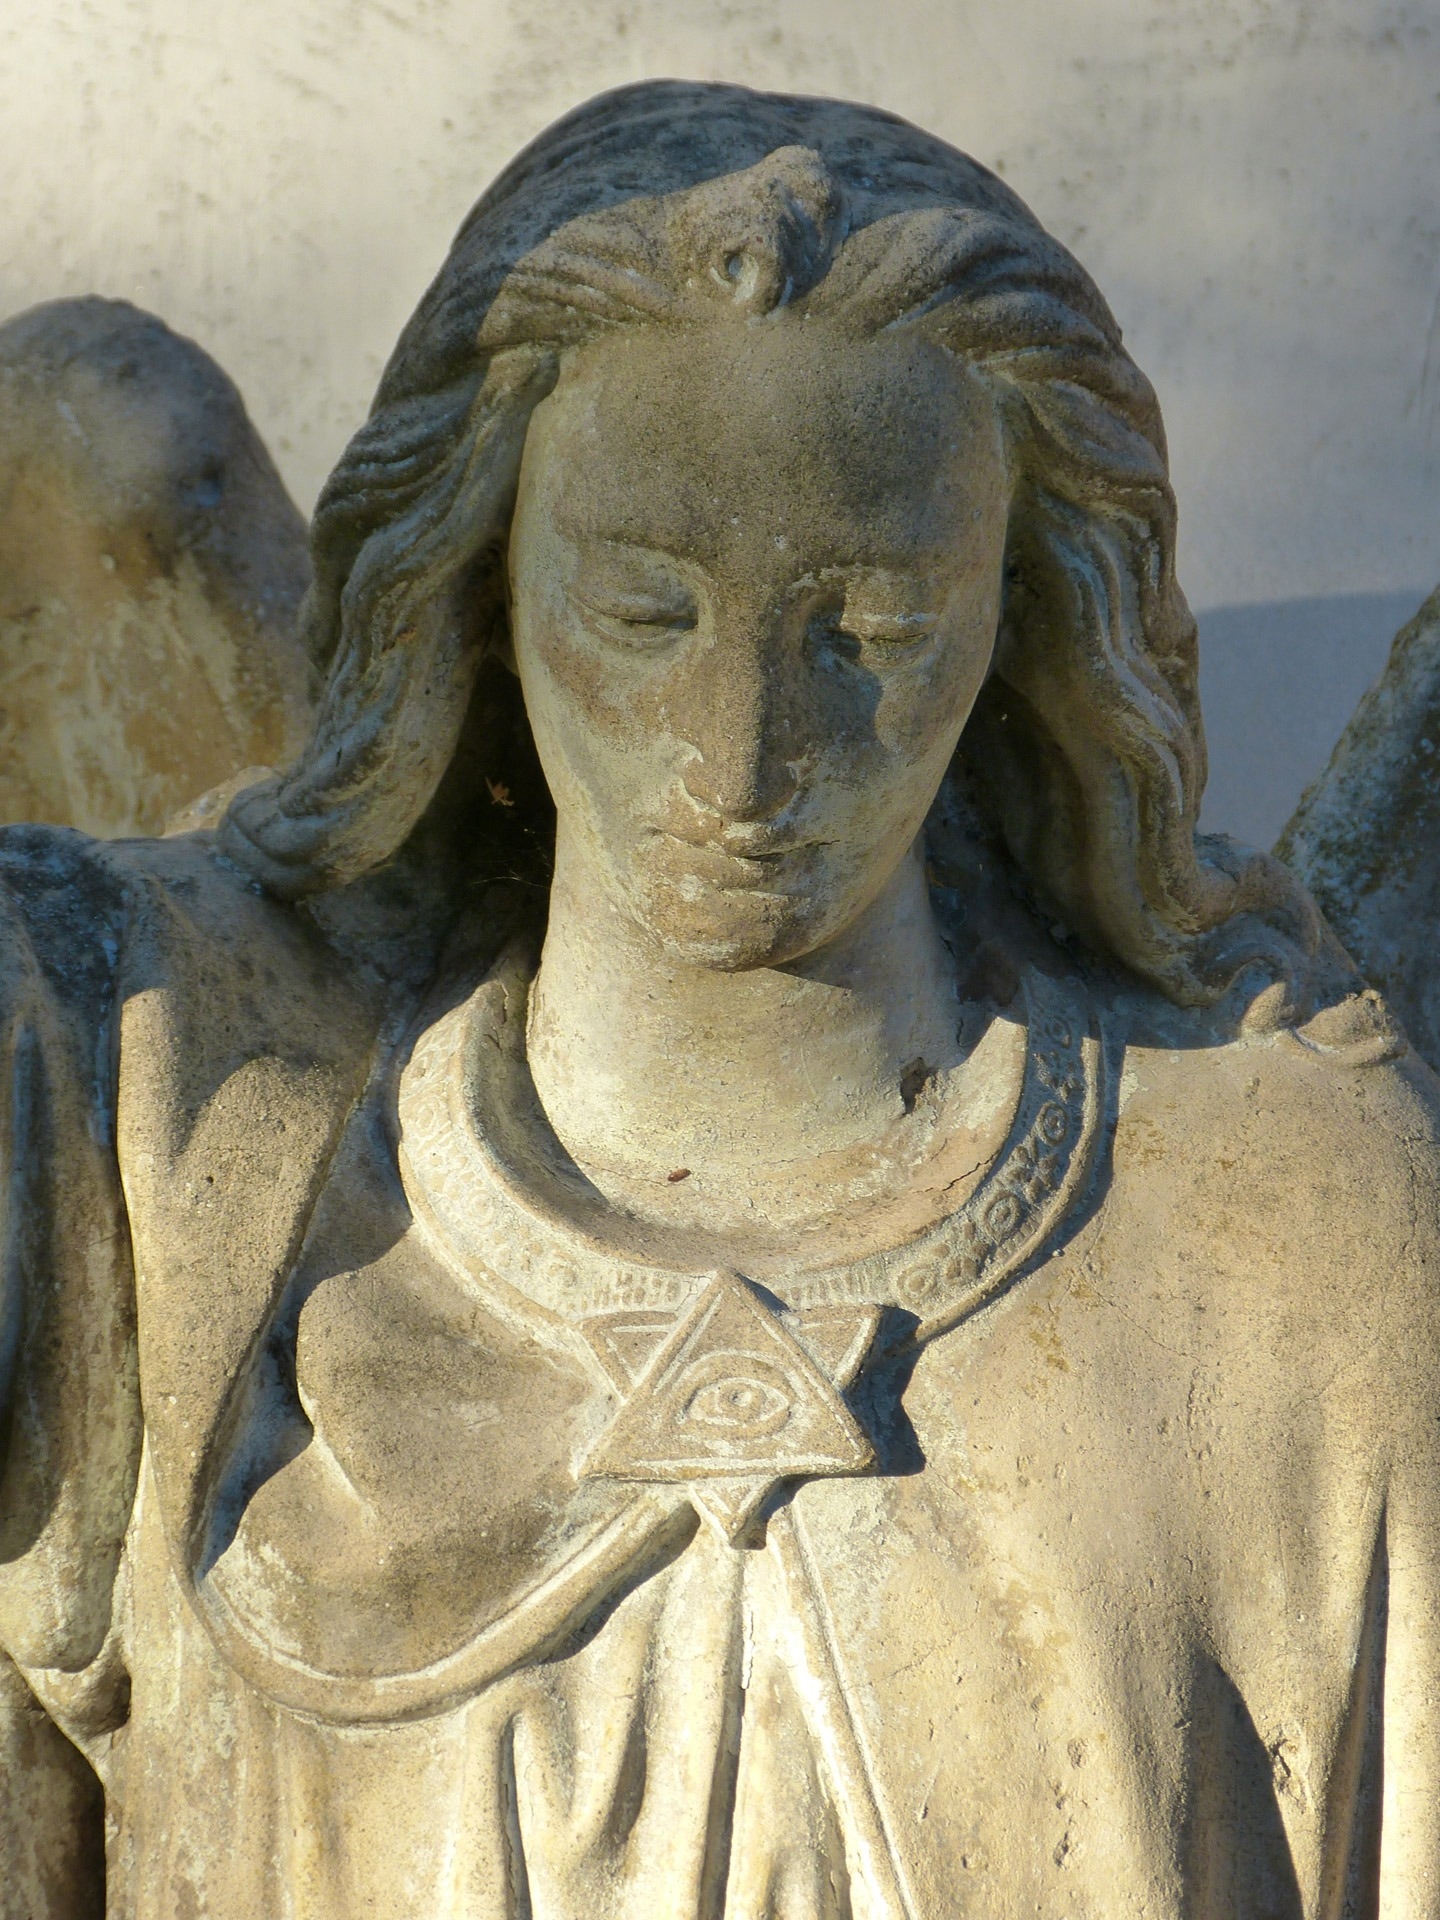 woman angel with eye pin on dress figurine